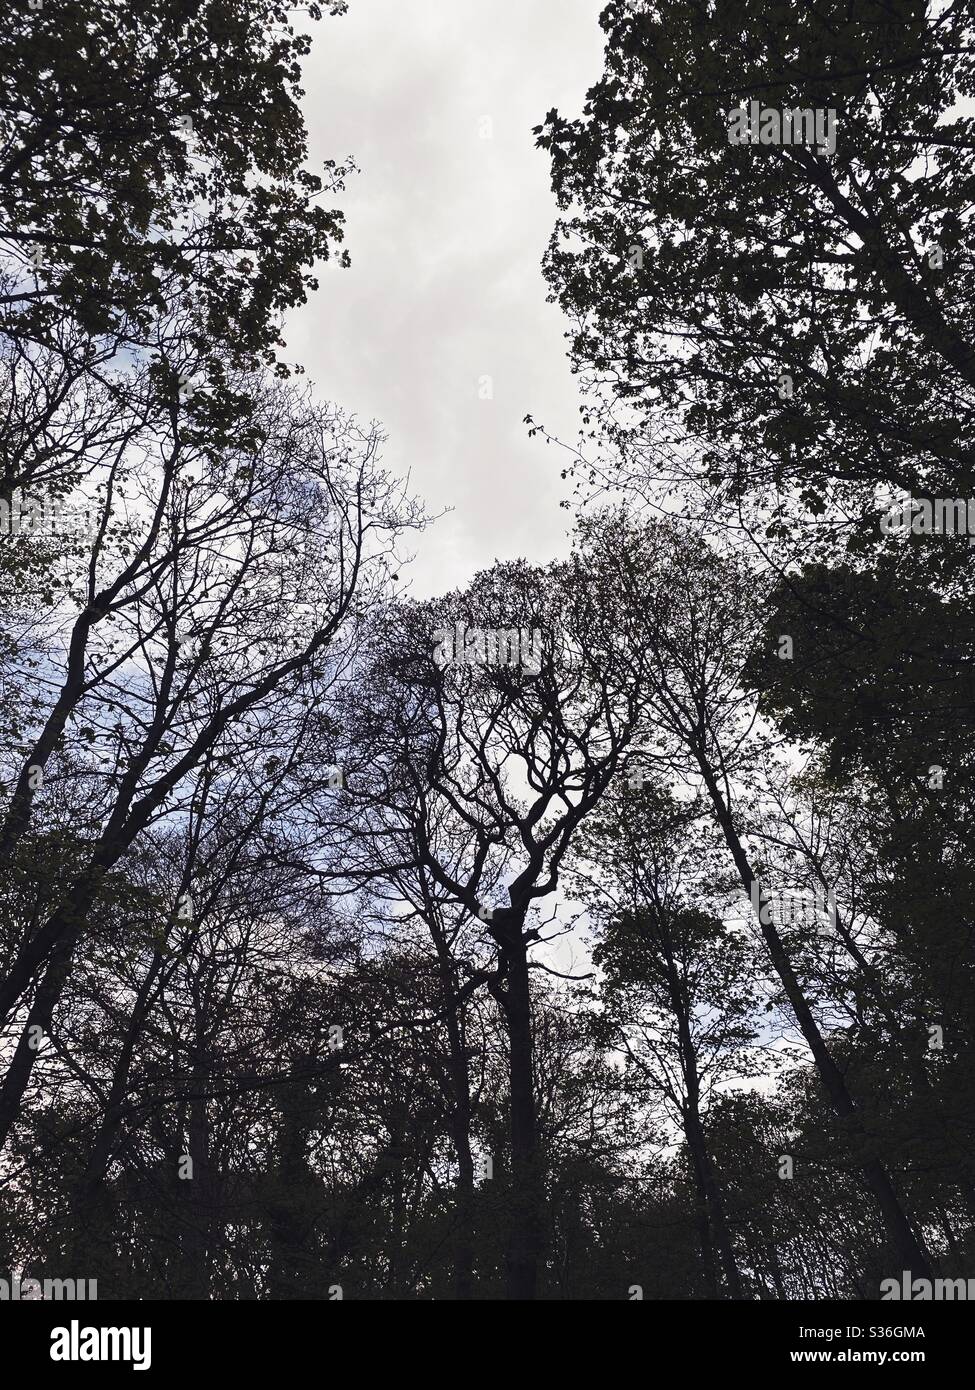 Niedrige Winkel Blick in einem ländlichen britischen Wald. Mit ominösen und abstrakten Baumstämmen, die Silhouetten mit krummen verdrehten Ästen erzeugen. Gespenstisch gespenstischer Wald Stockfoto